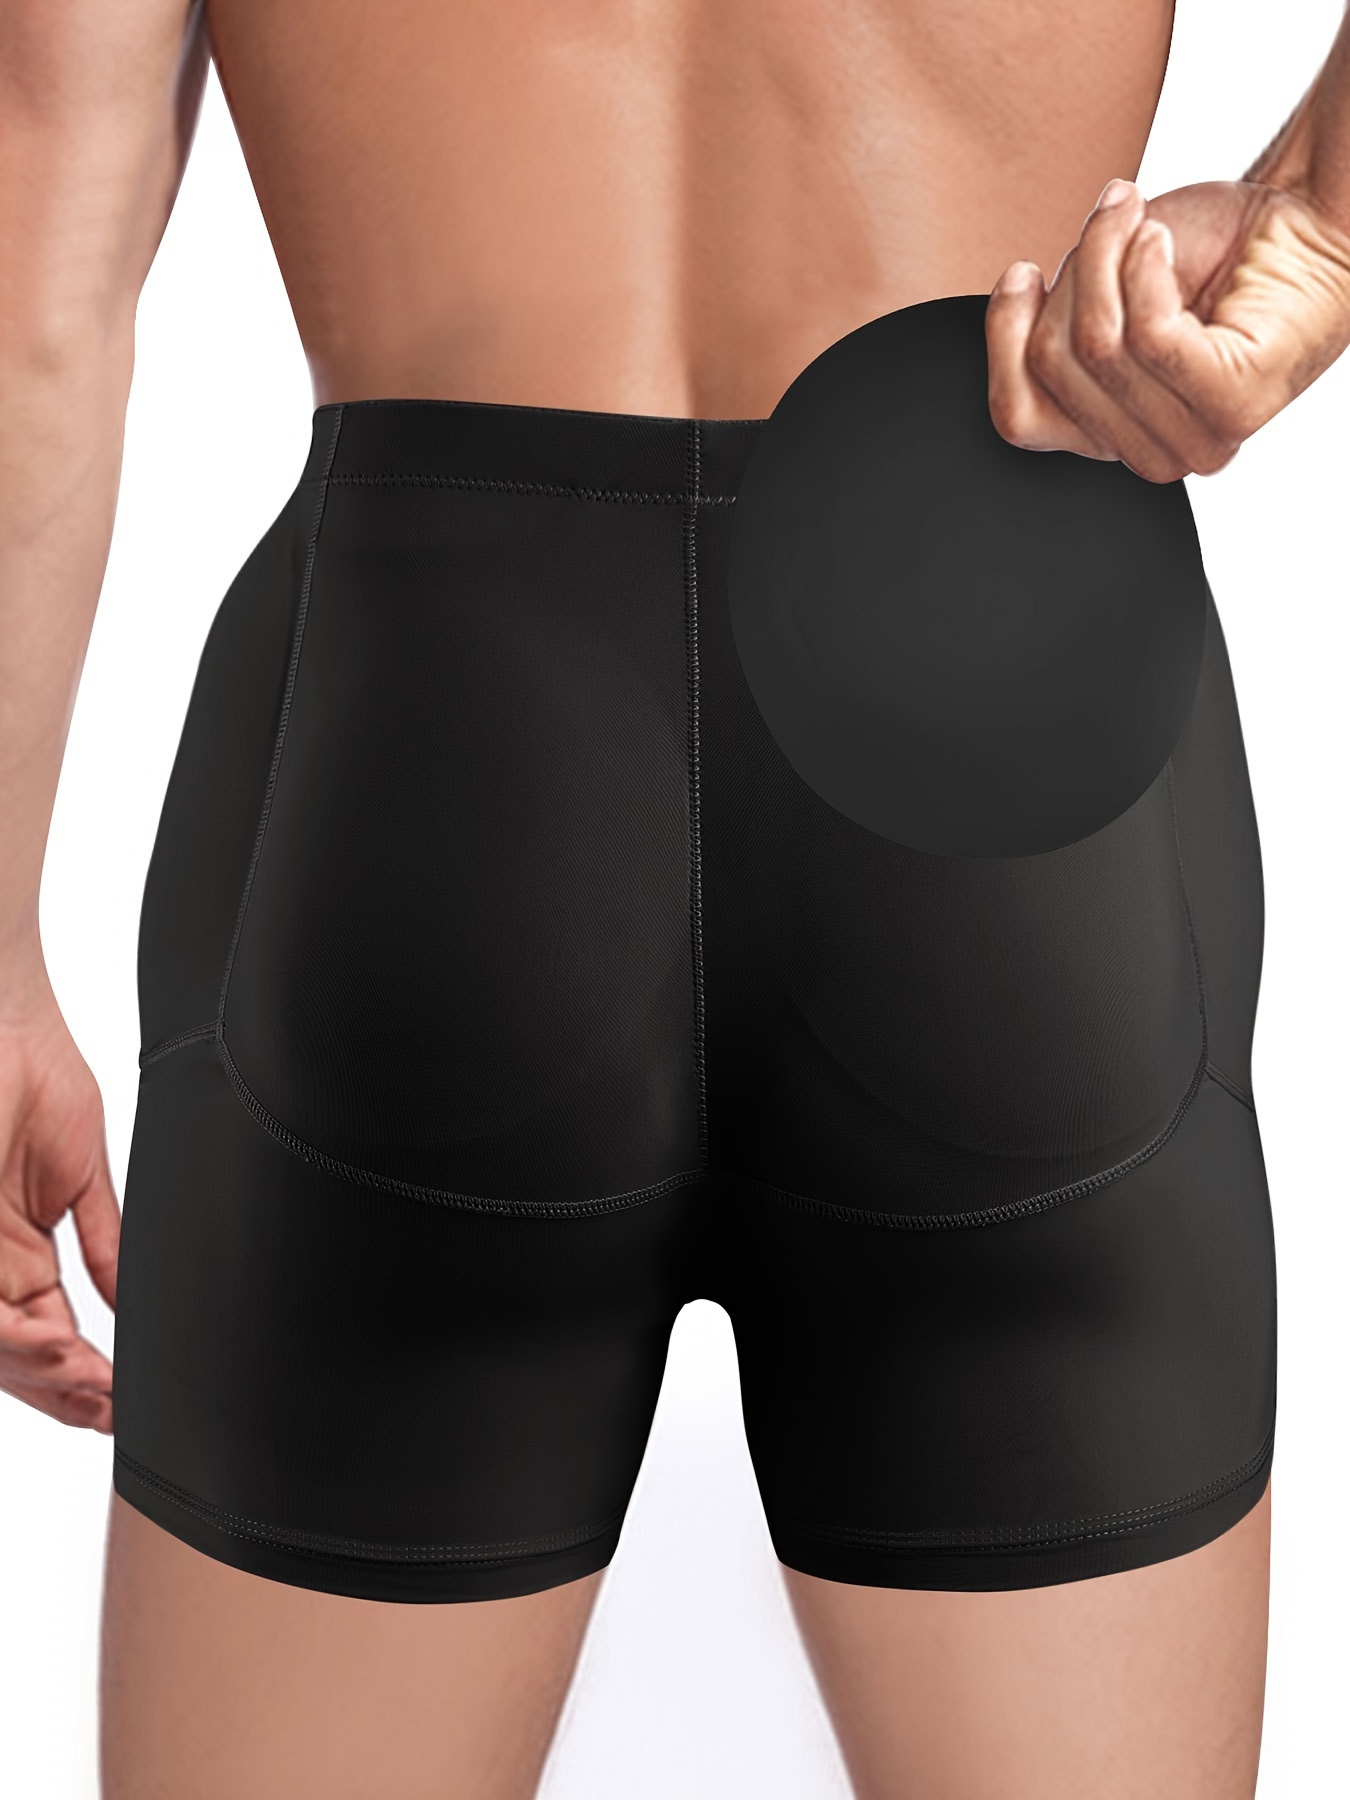 Men's Hip Lift Underwear Sexy Big Ass Butt Push Cup - Temu Canada